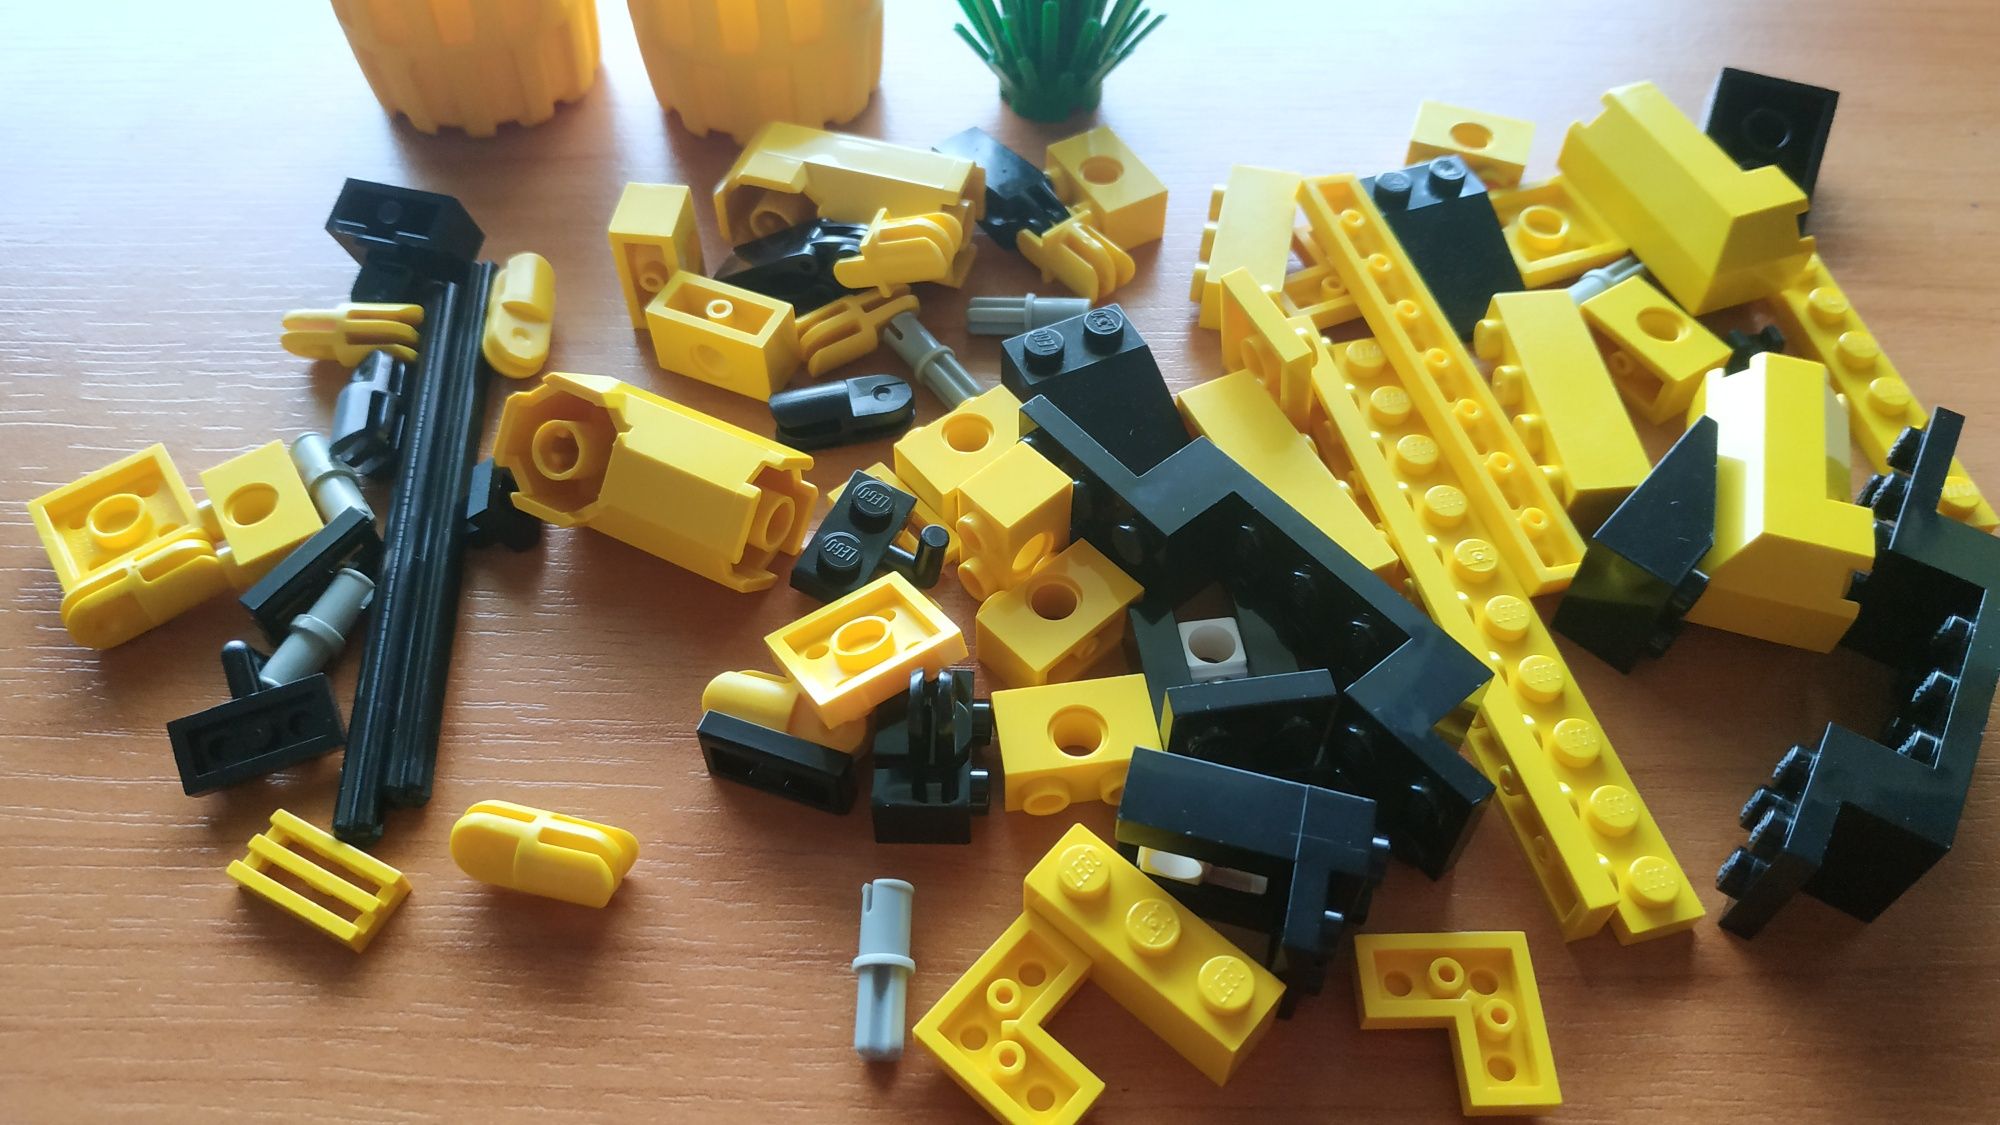 Klocki LEGO aquazone 6145